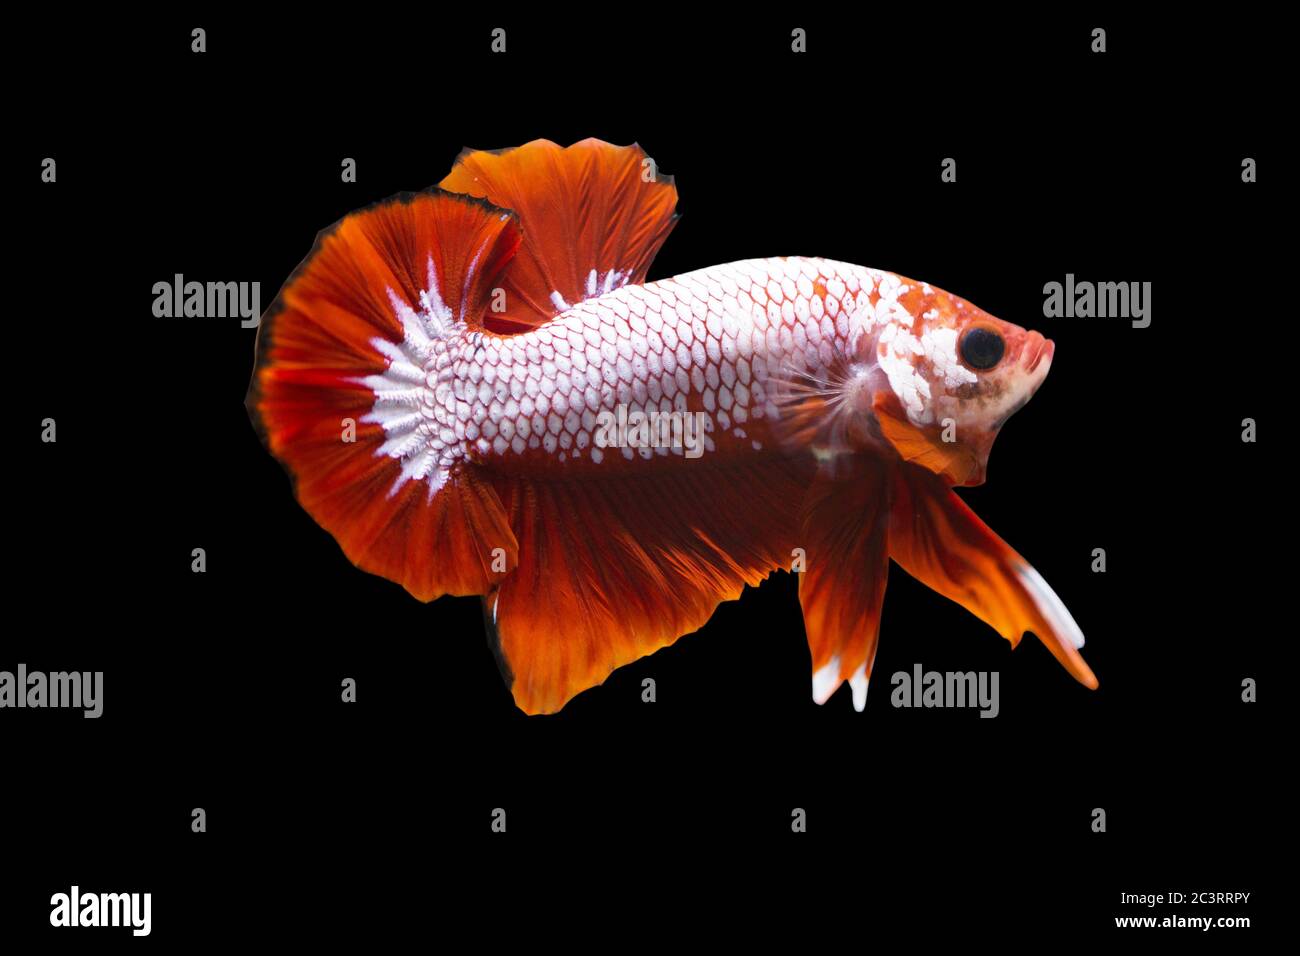 Betta Fancy Red HMPK Male or Plakat Fighting Fish Splendens on Black Background. Stock Photo